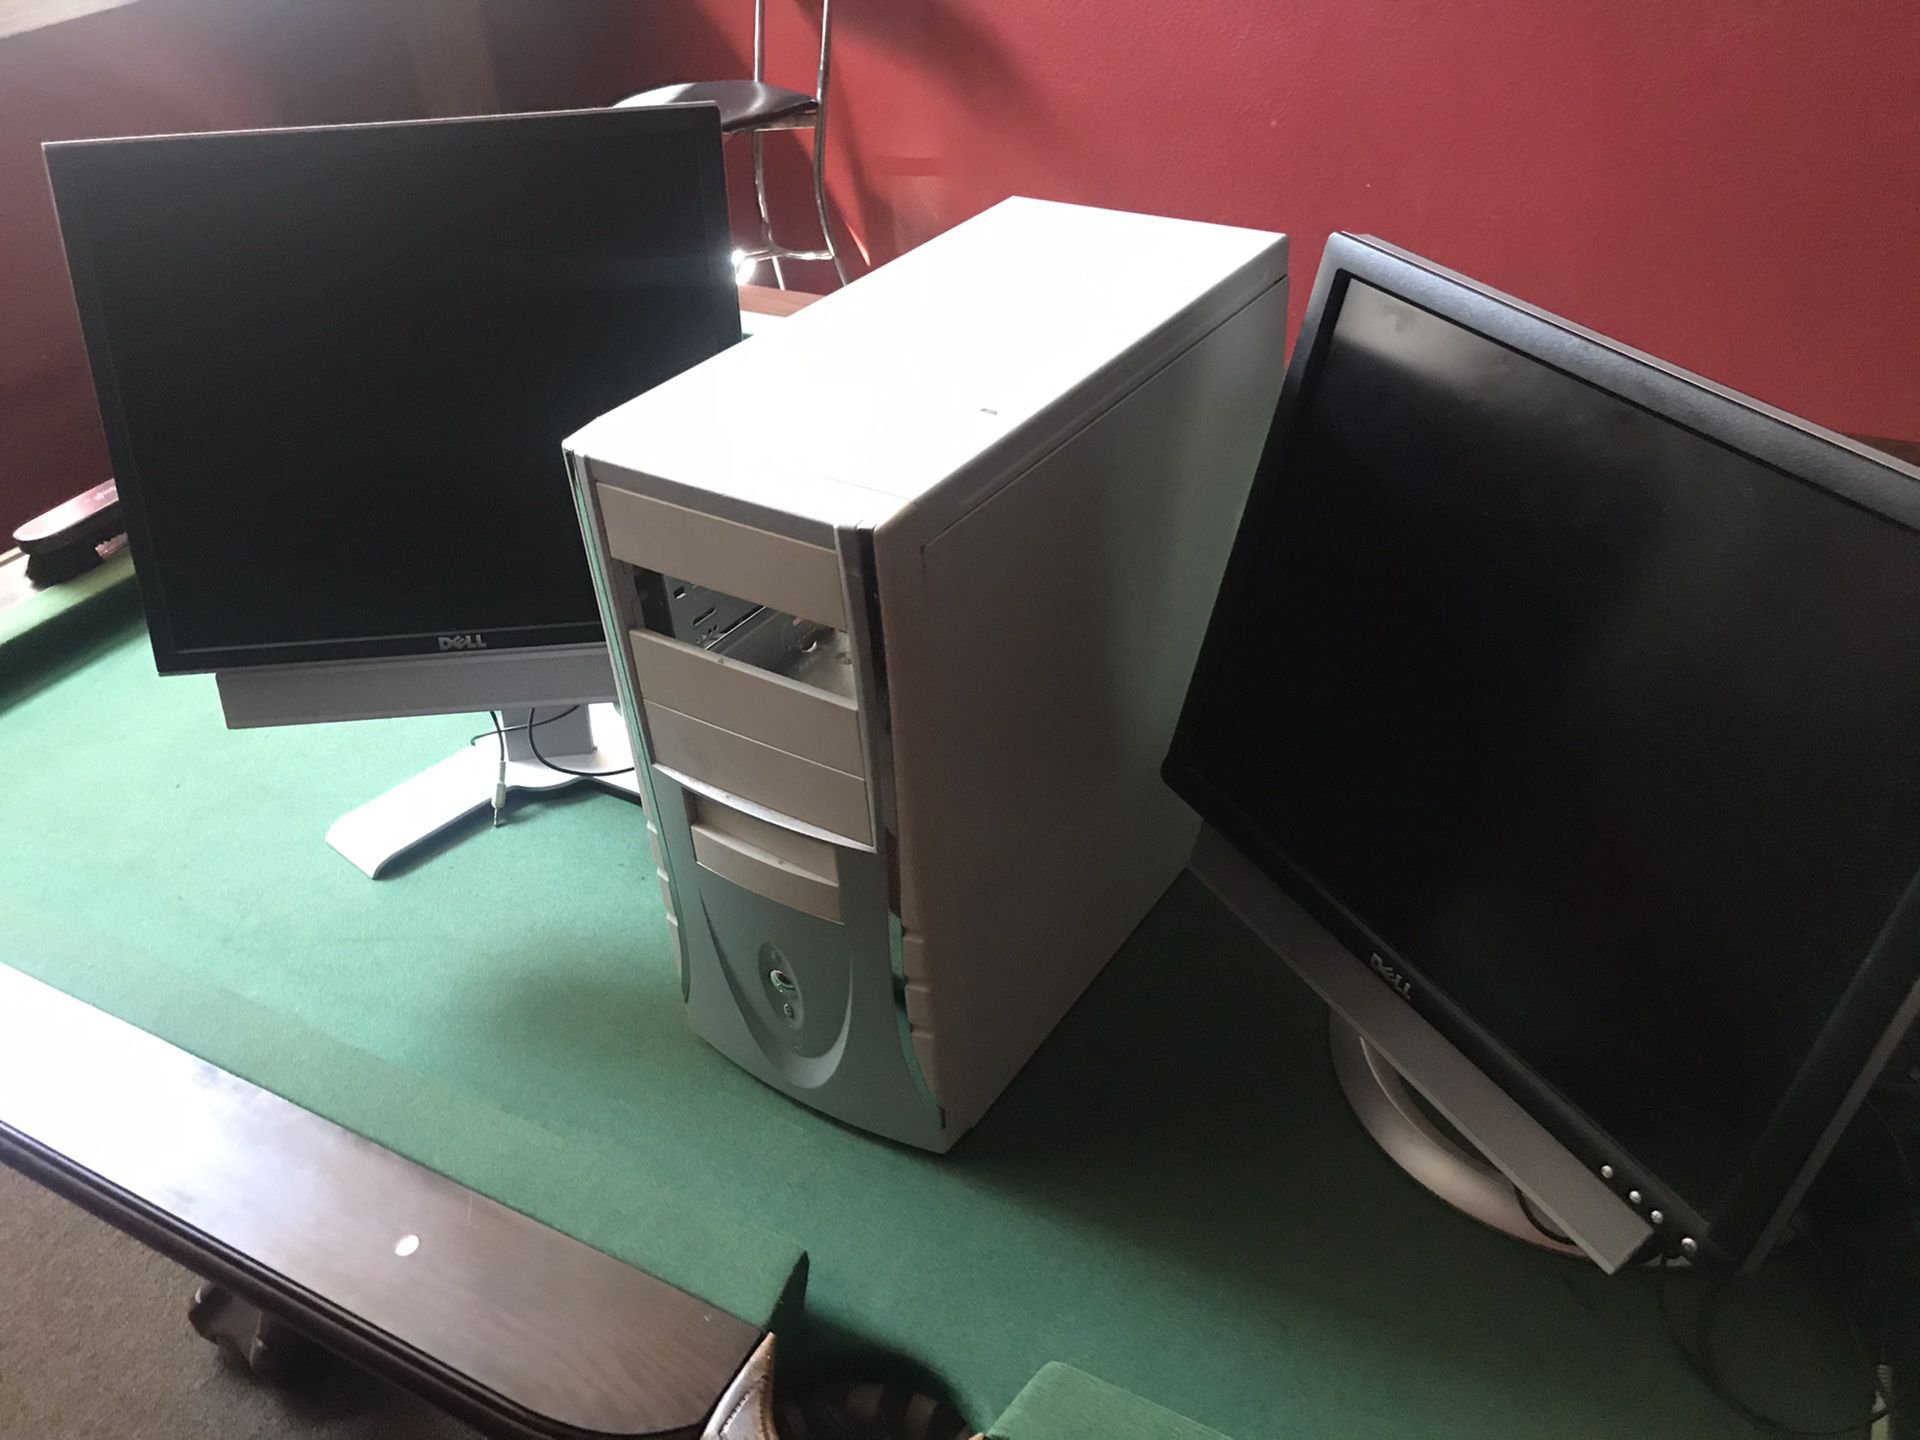 Free computer parts and monitors